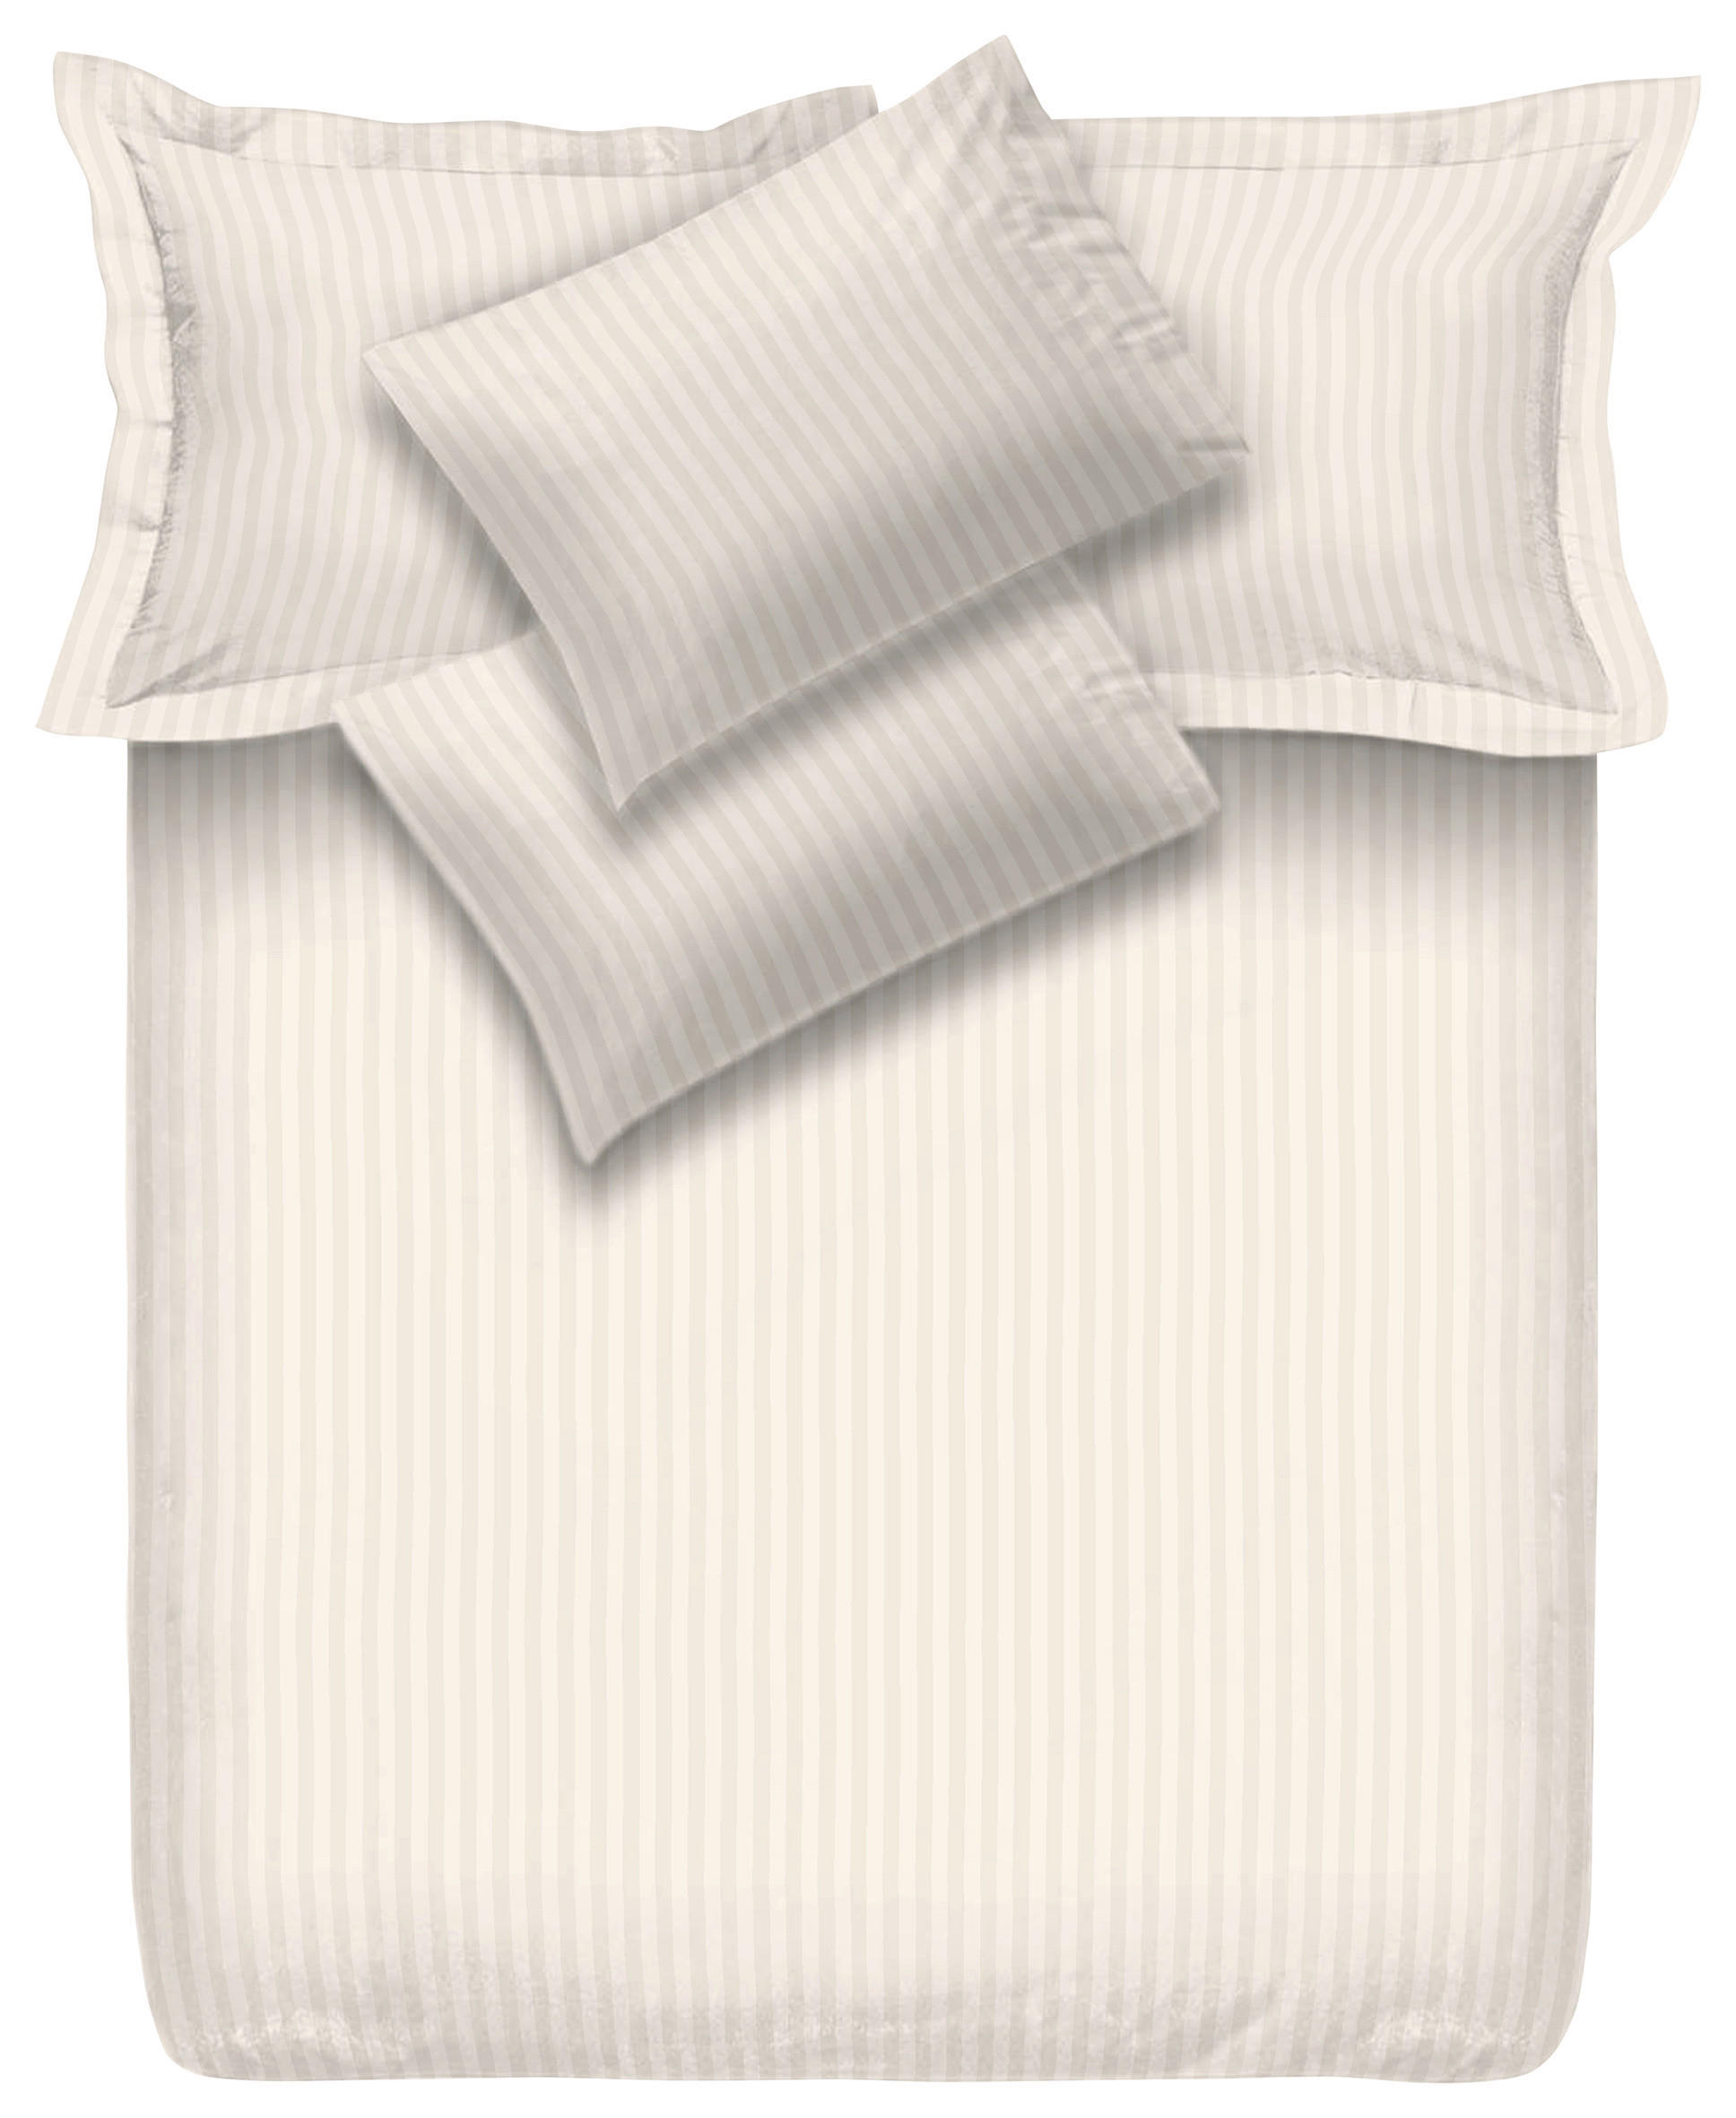 POSTELJINA 200/200 cm  - bijela, Konvencionalno, tekstil (200/200cm) - Esposa